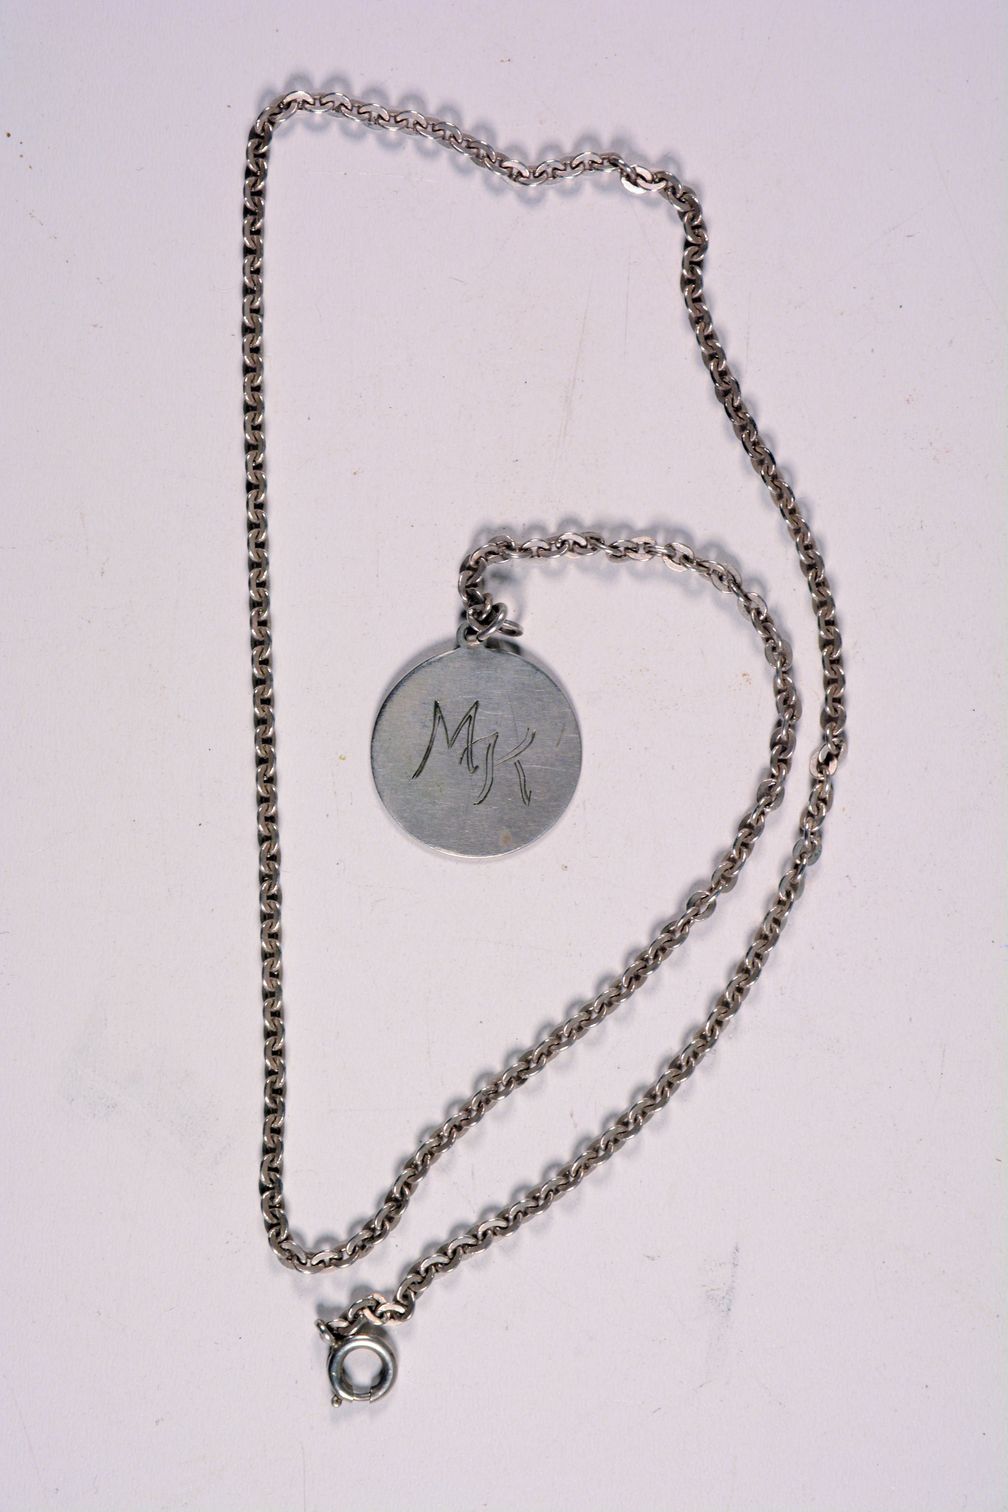 Eine silberne Halskette mit Anhänger und der Gravur "MK"